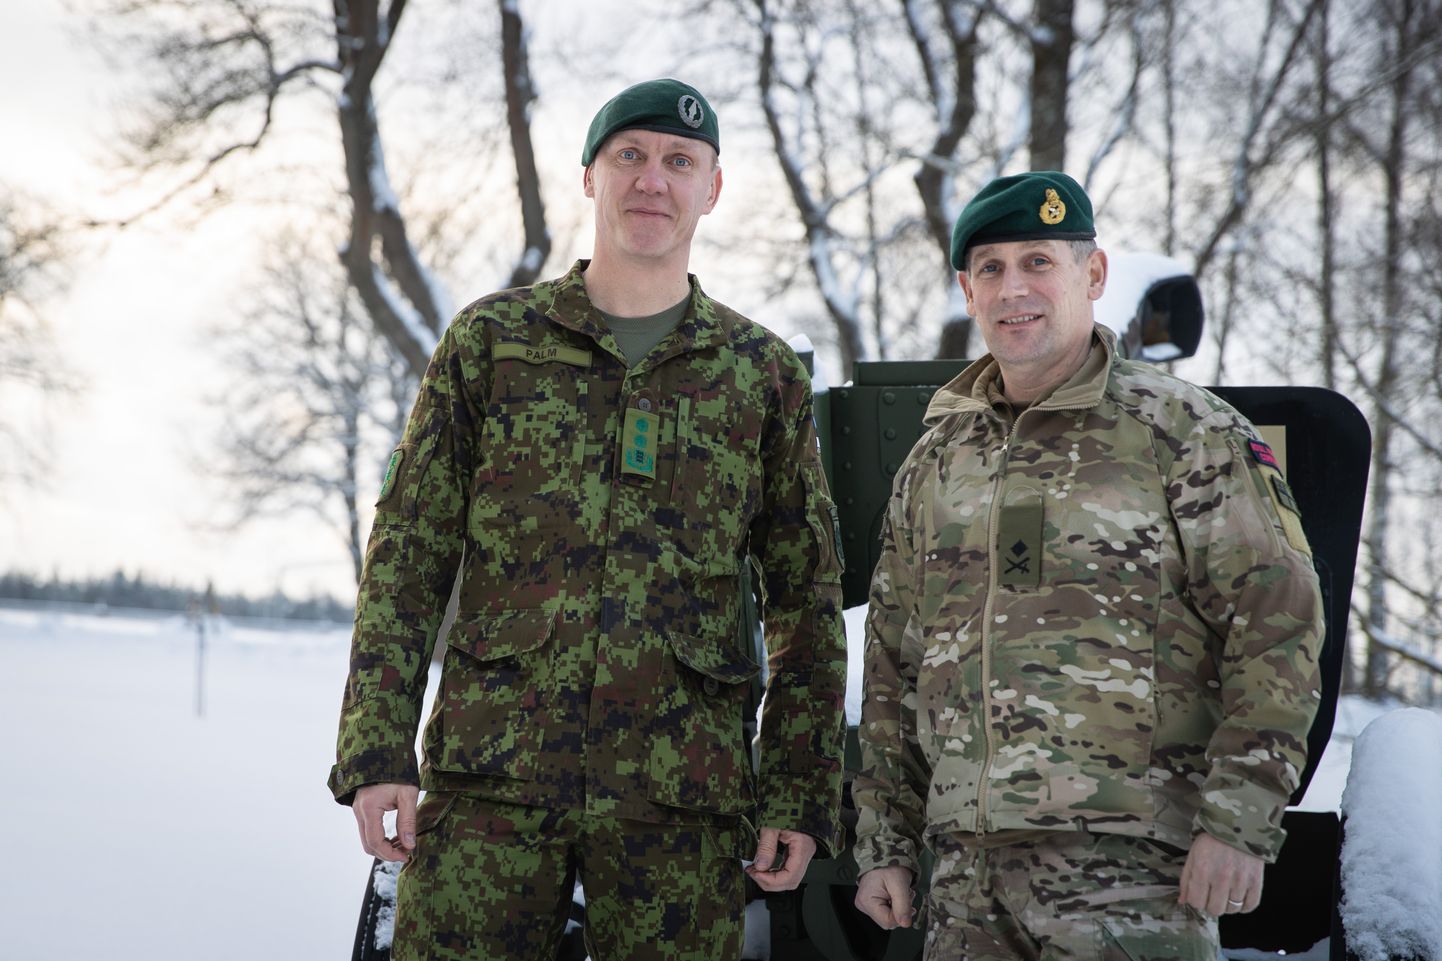 Briti ühendekspeditsiooniväe ülem kindralmajor Jim Morris (paremal) ja kaitseväe juhataja asetäitja kindralmajor Veiko-Vello Palm.